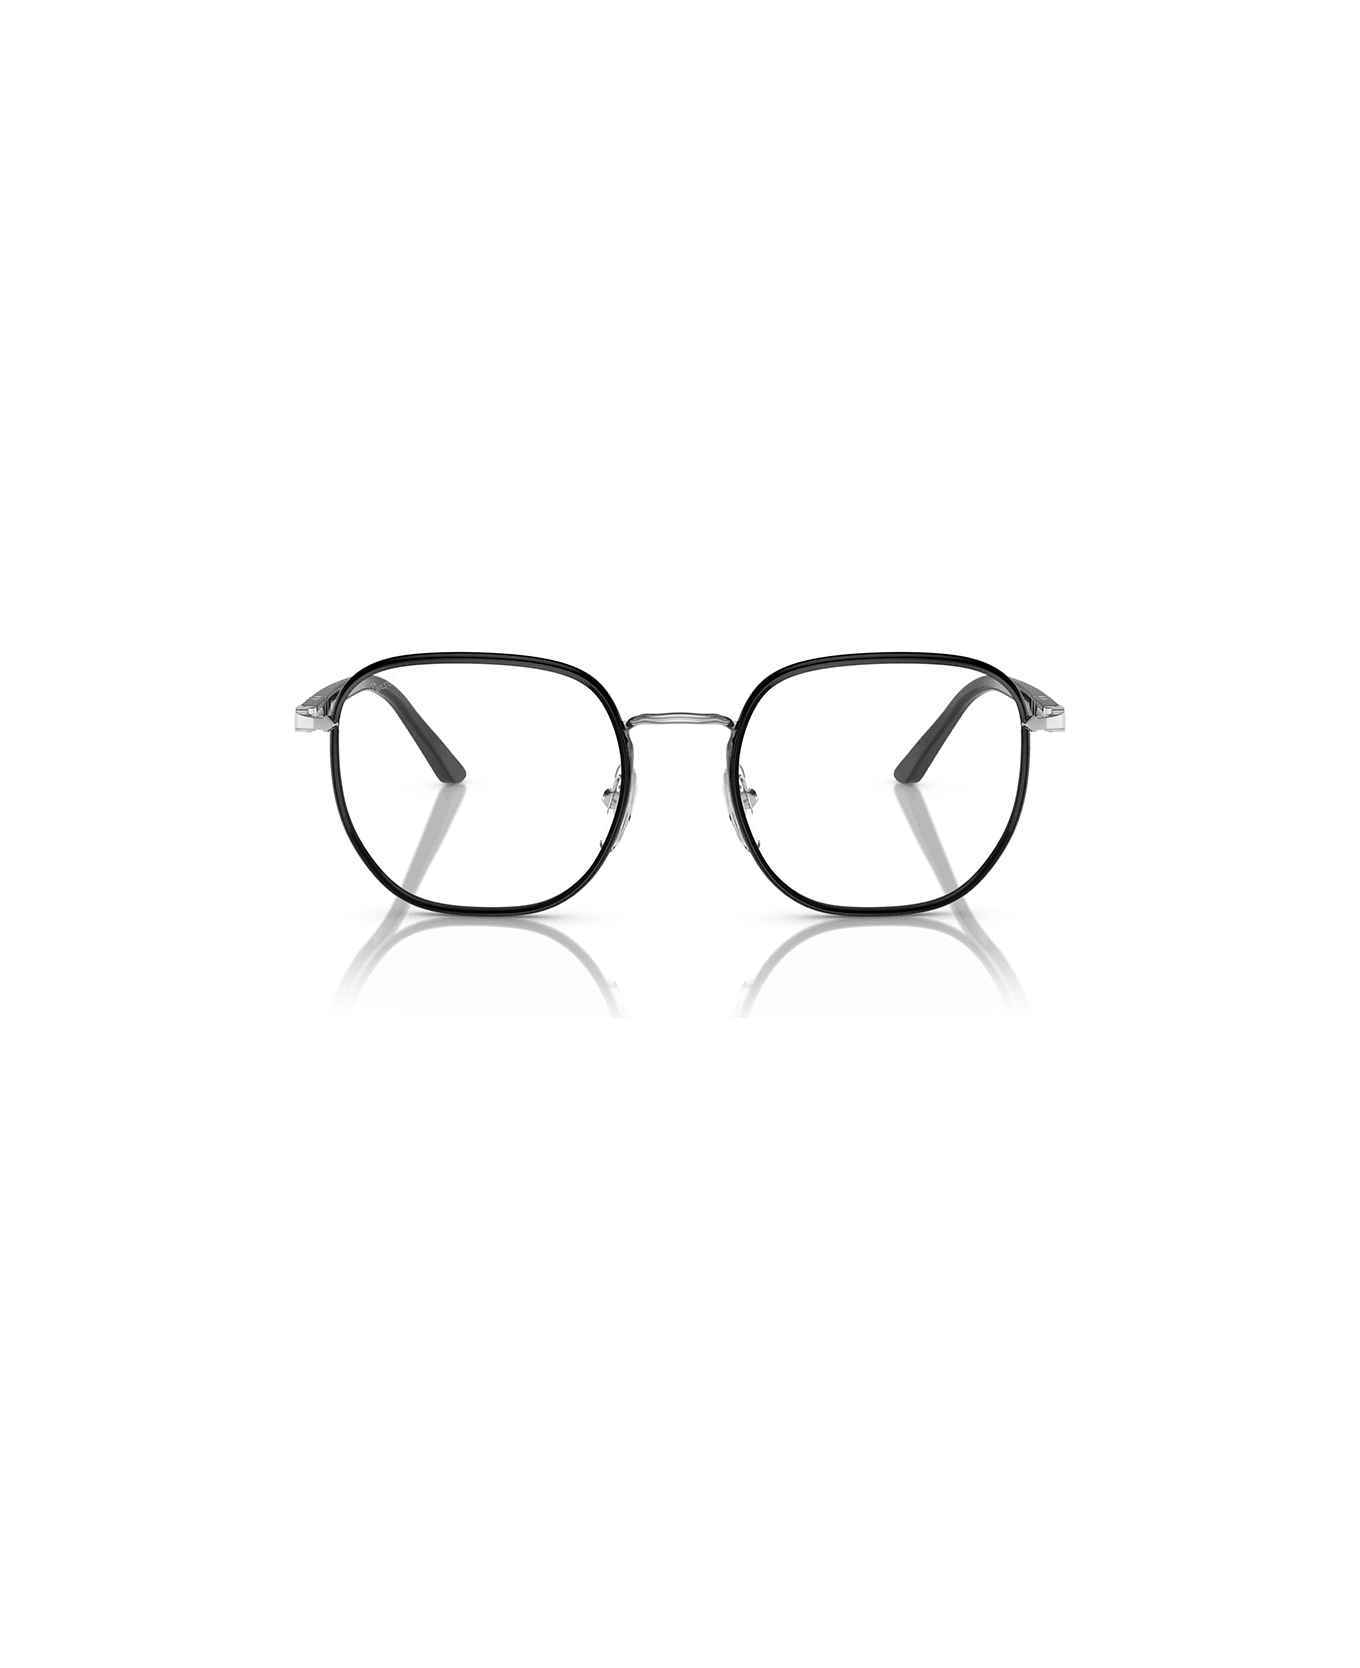 Persol Eyewear - Nero/Verde